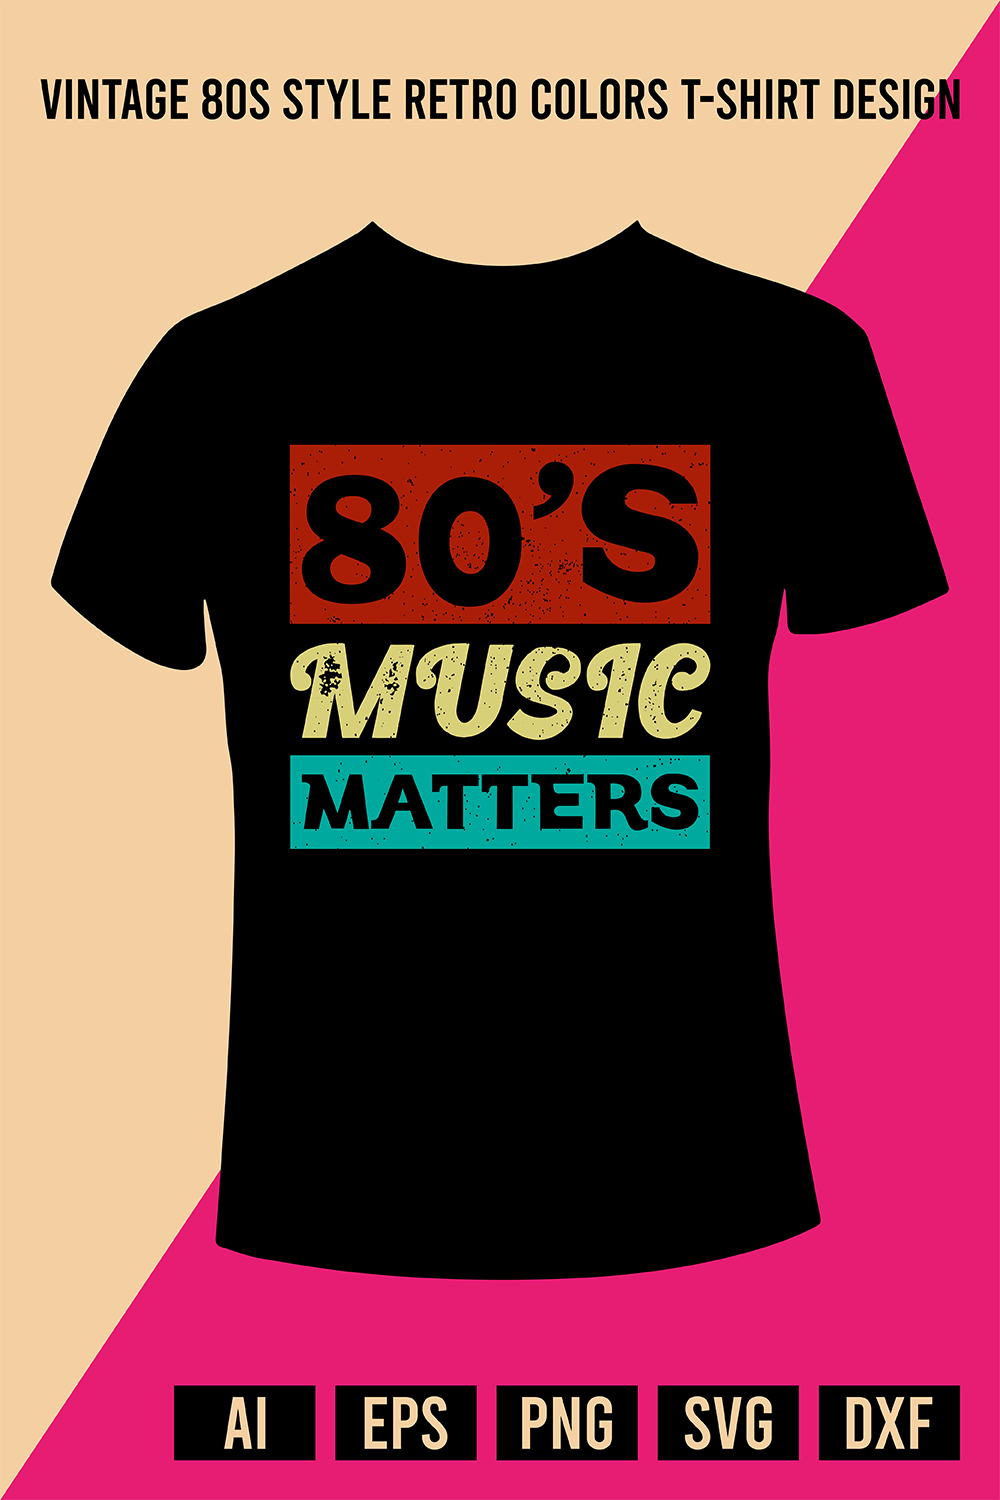 Vintage 80s Style Retro Colors T-Shirt Design pinterest preview image.